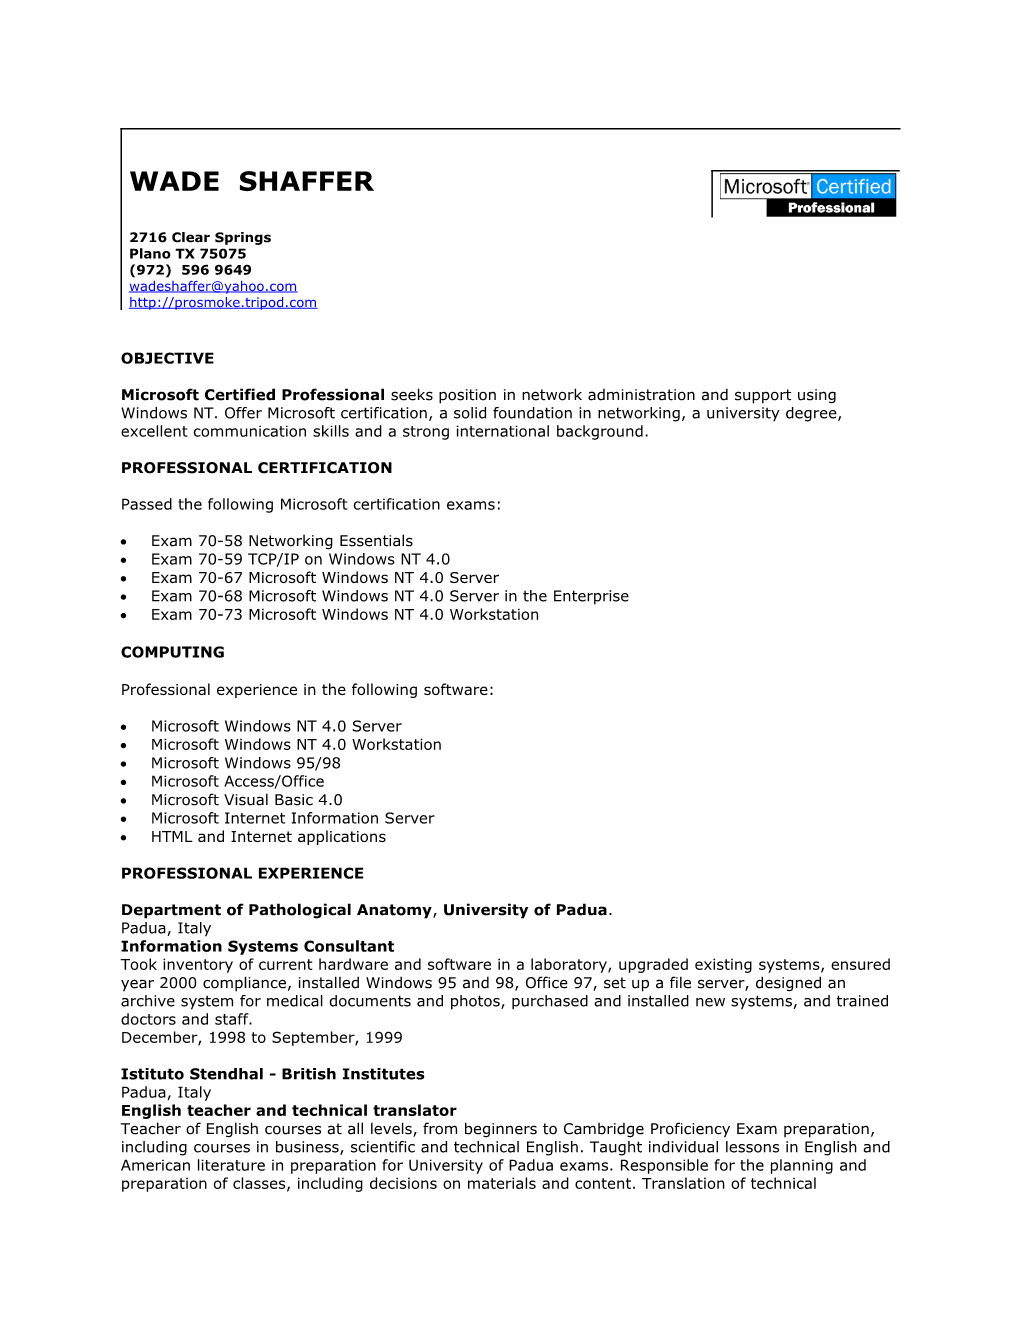 Resume for Wade Shaffer